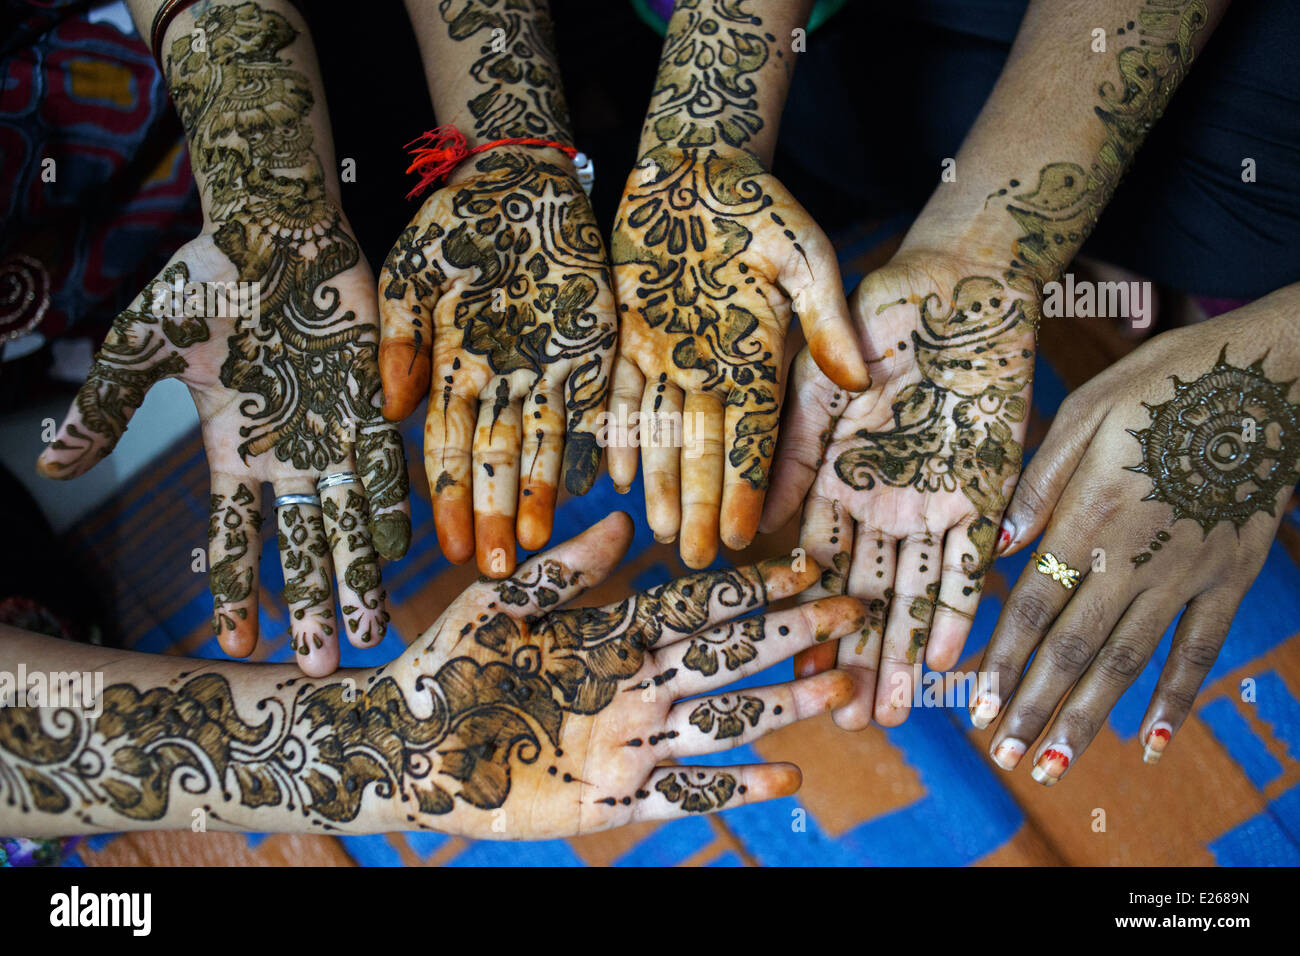 Decoradas manos a Mehndi (Heena, alheña) clase de arte administrado por una ONG local en Kandivali zona de Mumbai, India. Foto de stock